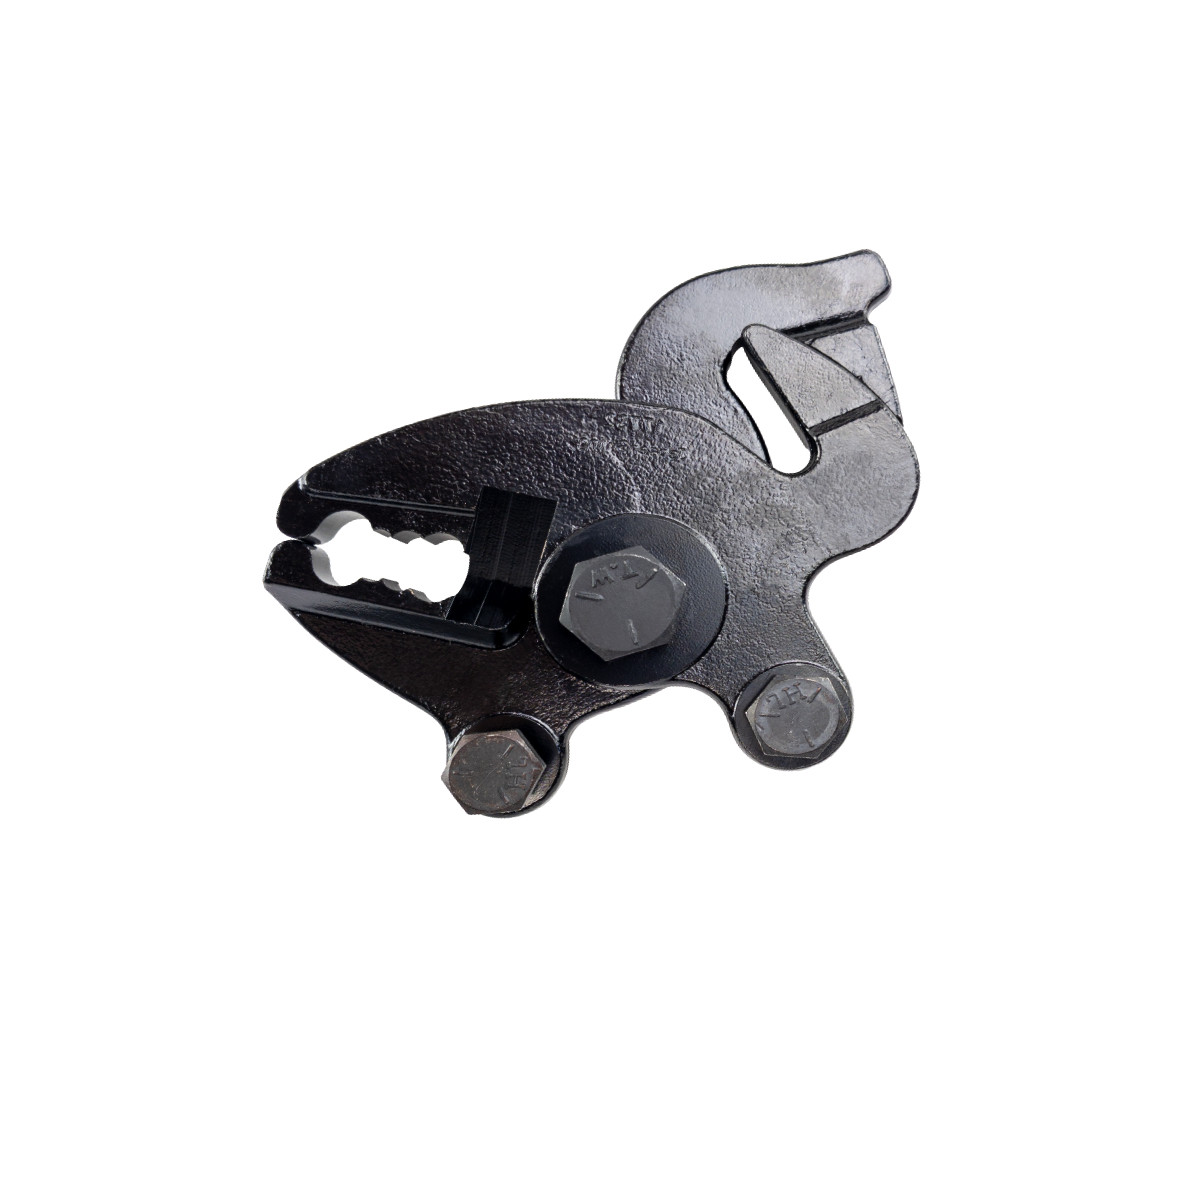 S-Hook Plier & Chain Cutter - Head Only (T105)